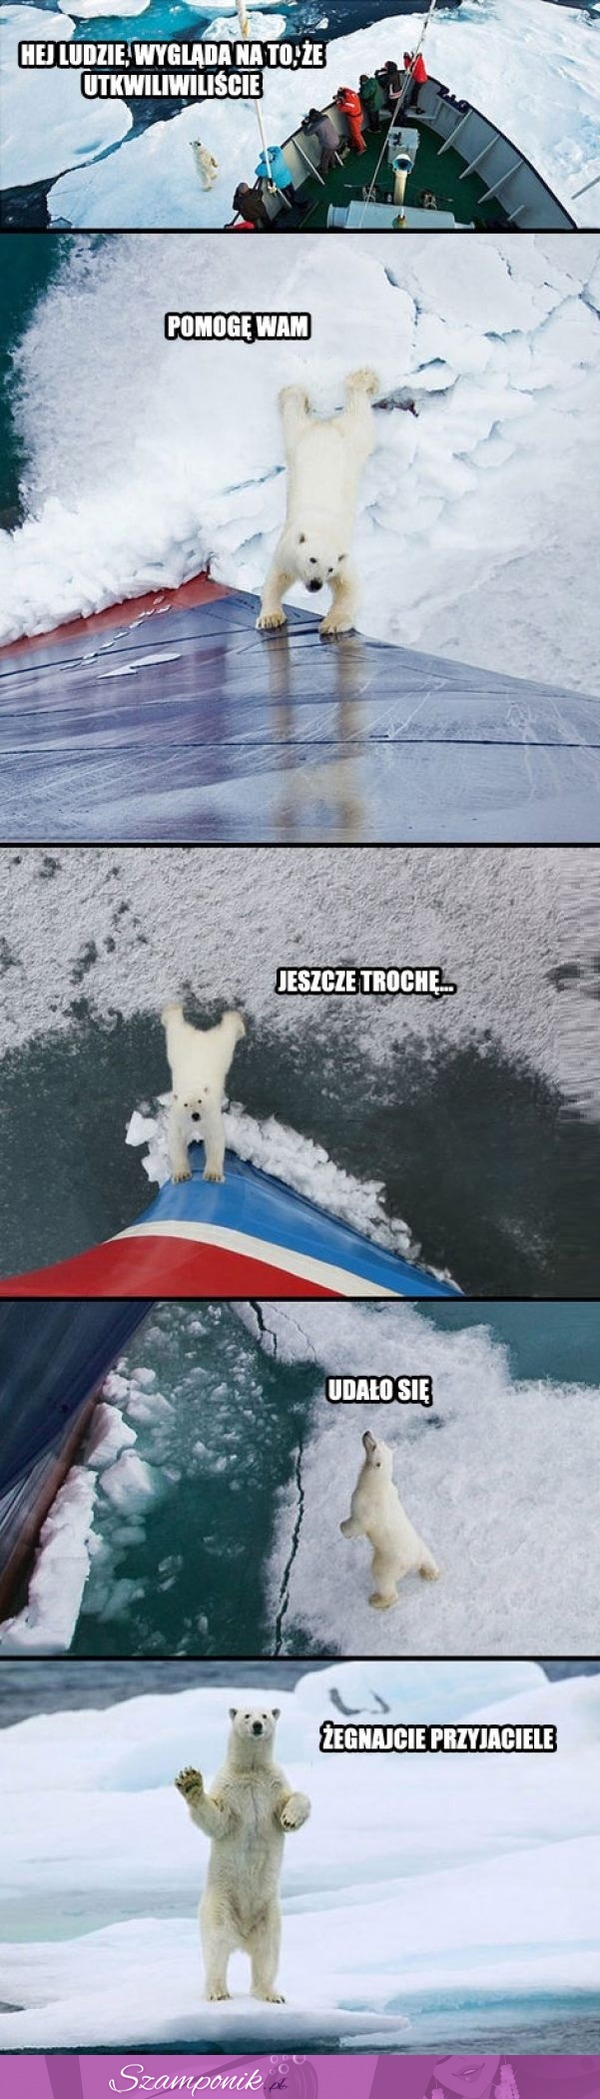 Niedźwiedż polarny pomaga odepchać łódź ;D